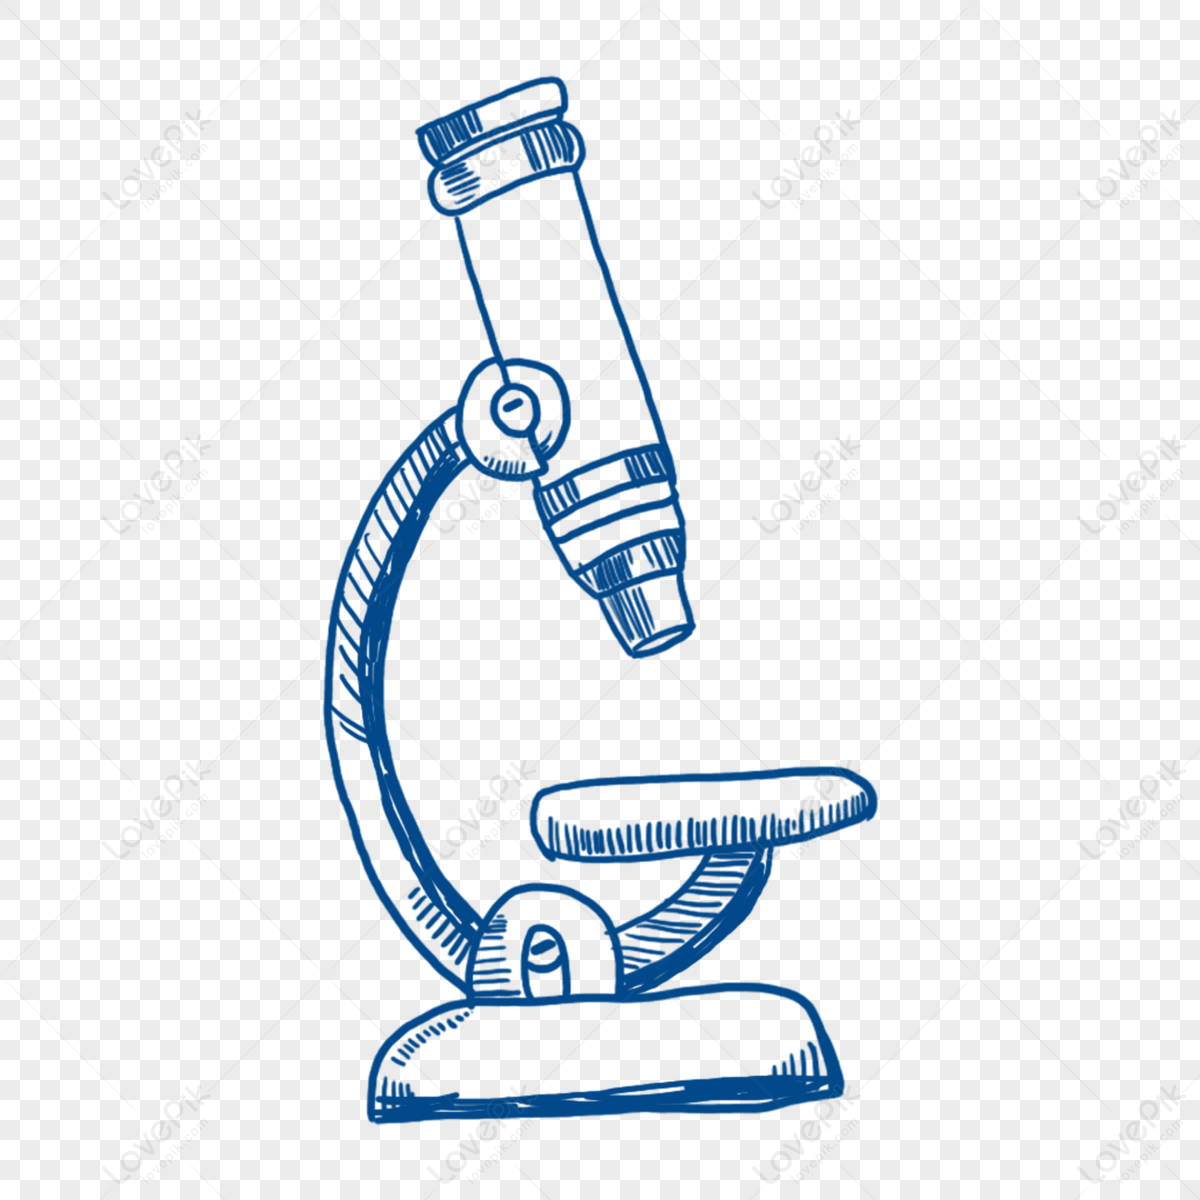 Microscope sketch icon: Graphic #72724185